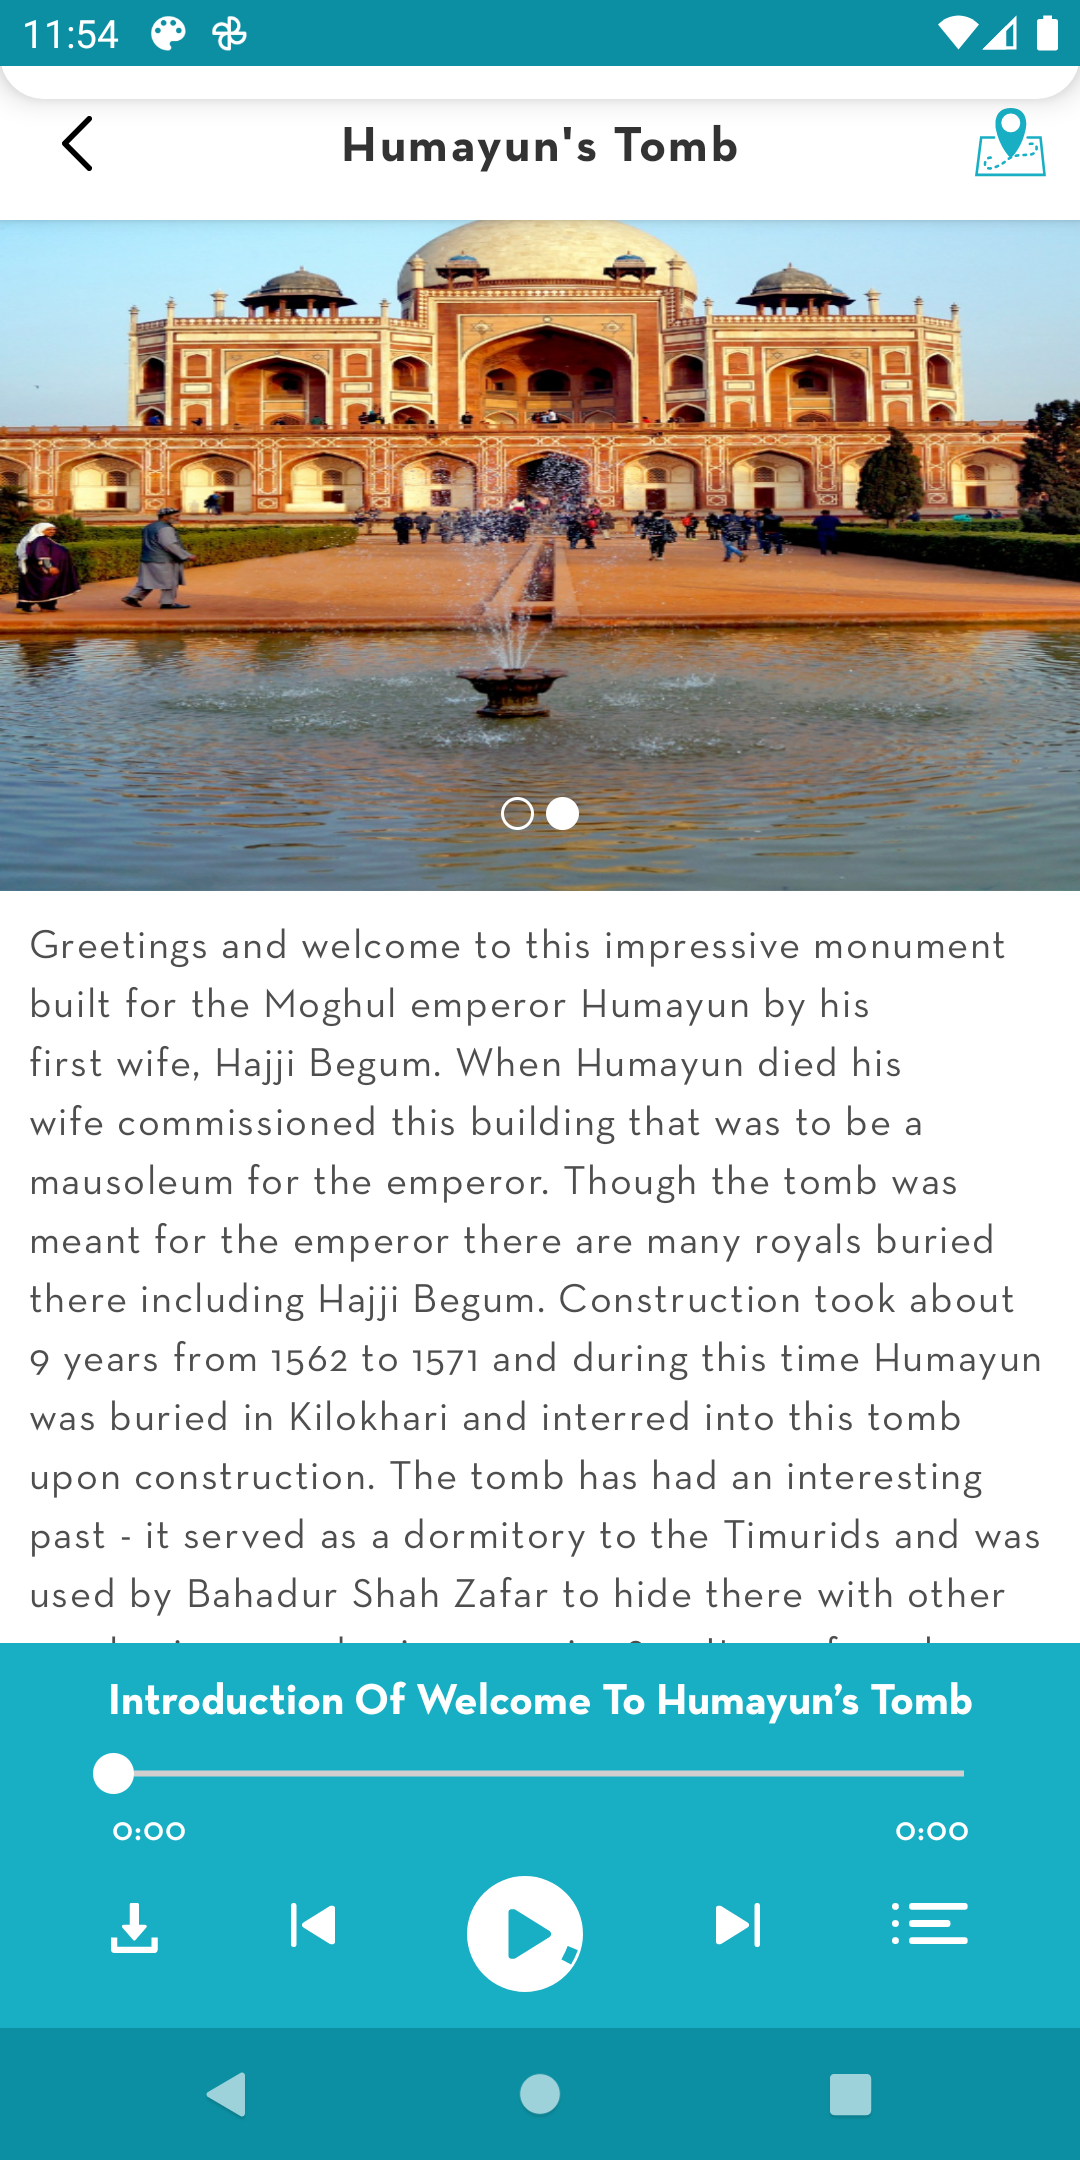 Humayun's Tomb tour